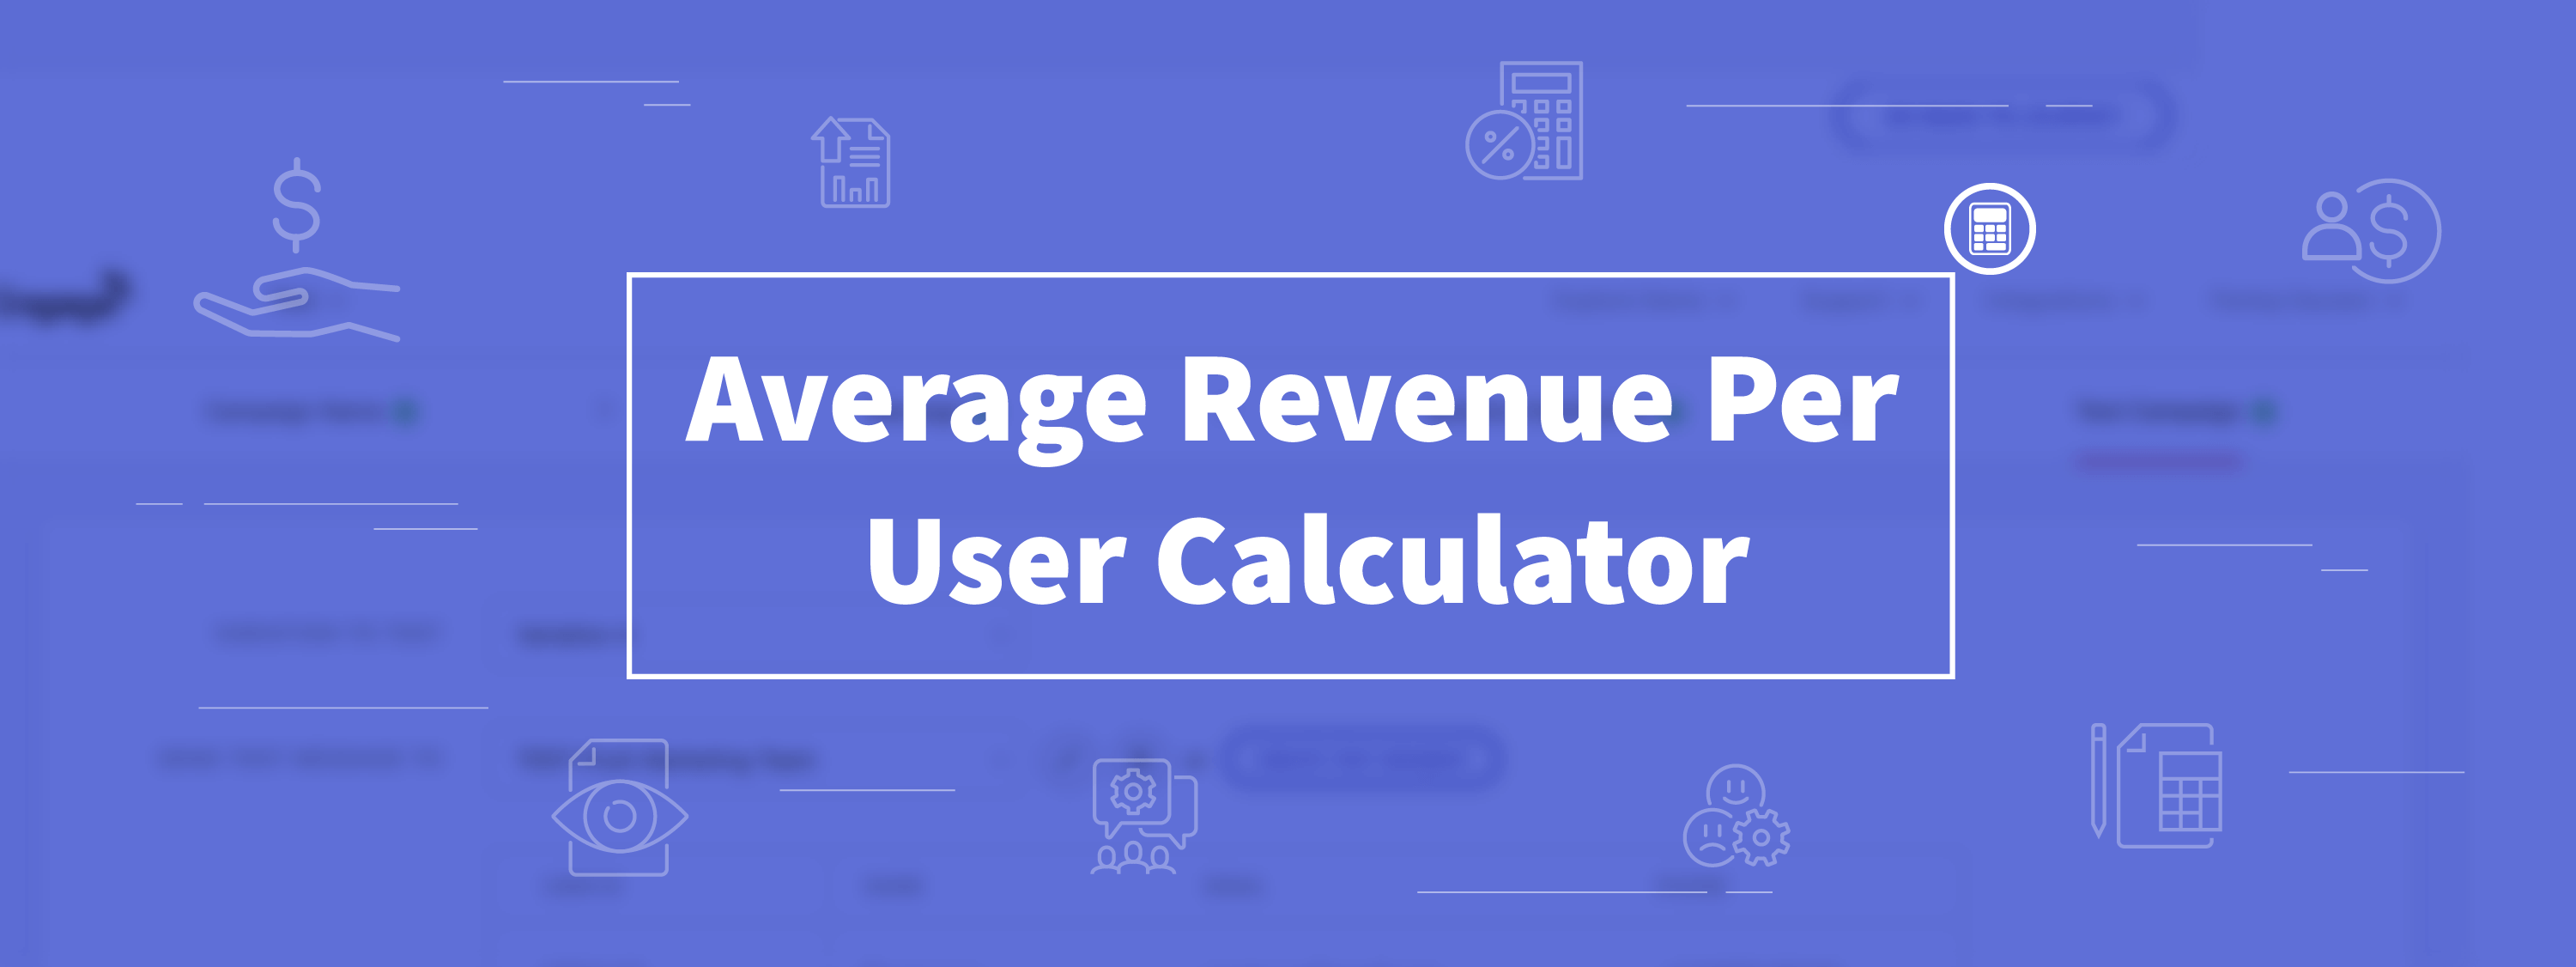 Average Revenue Per User Calculator